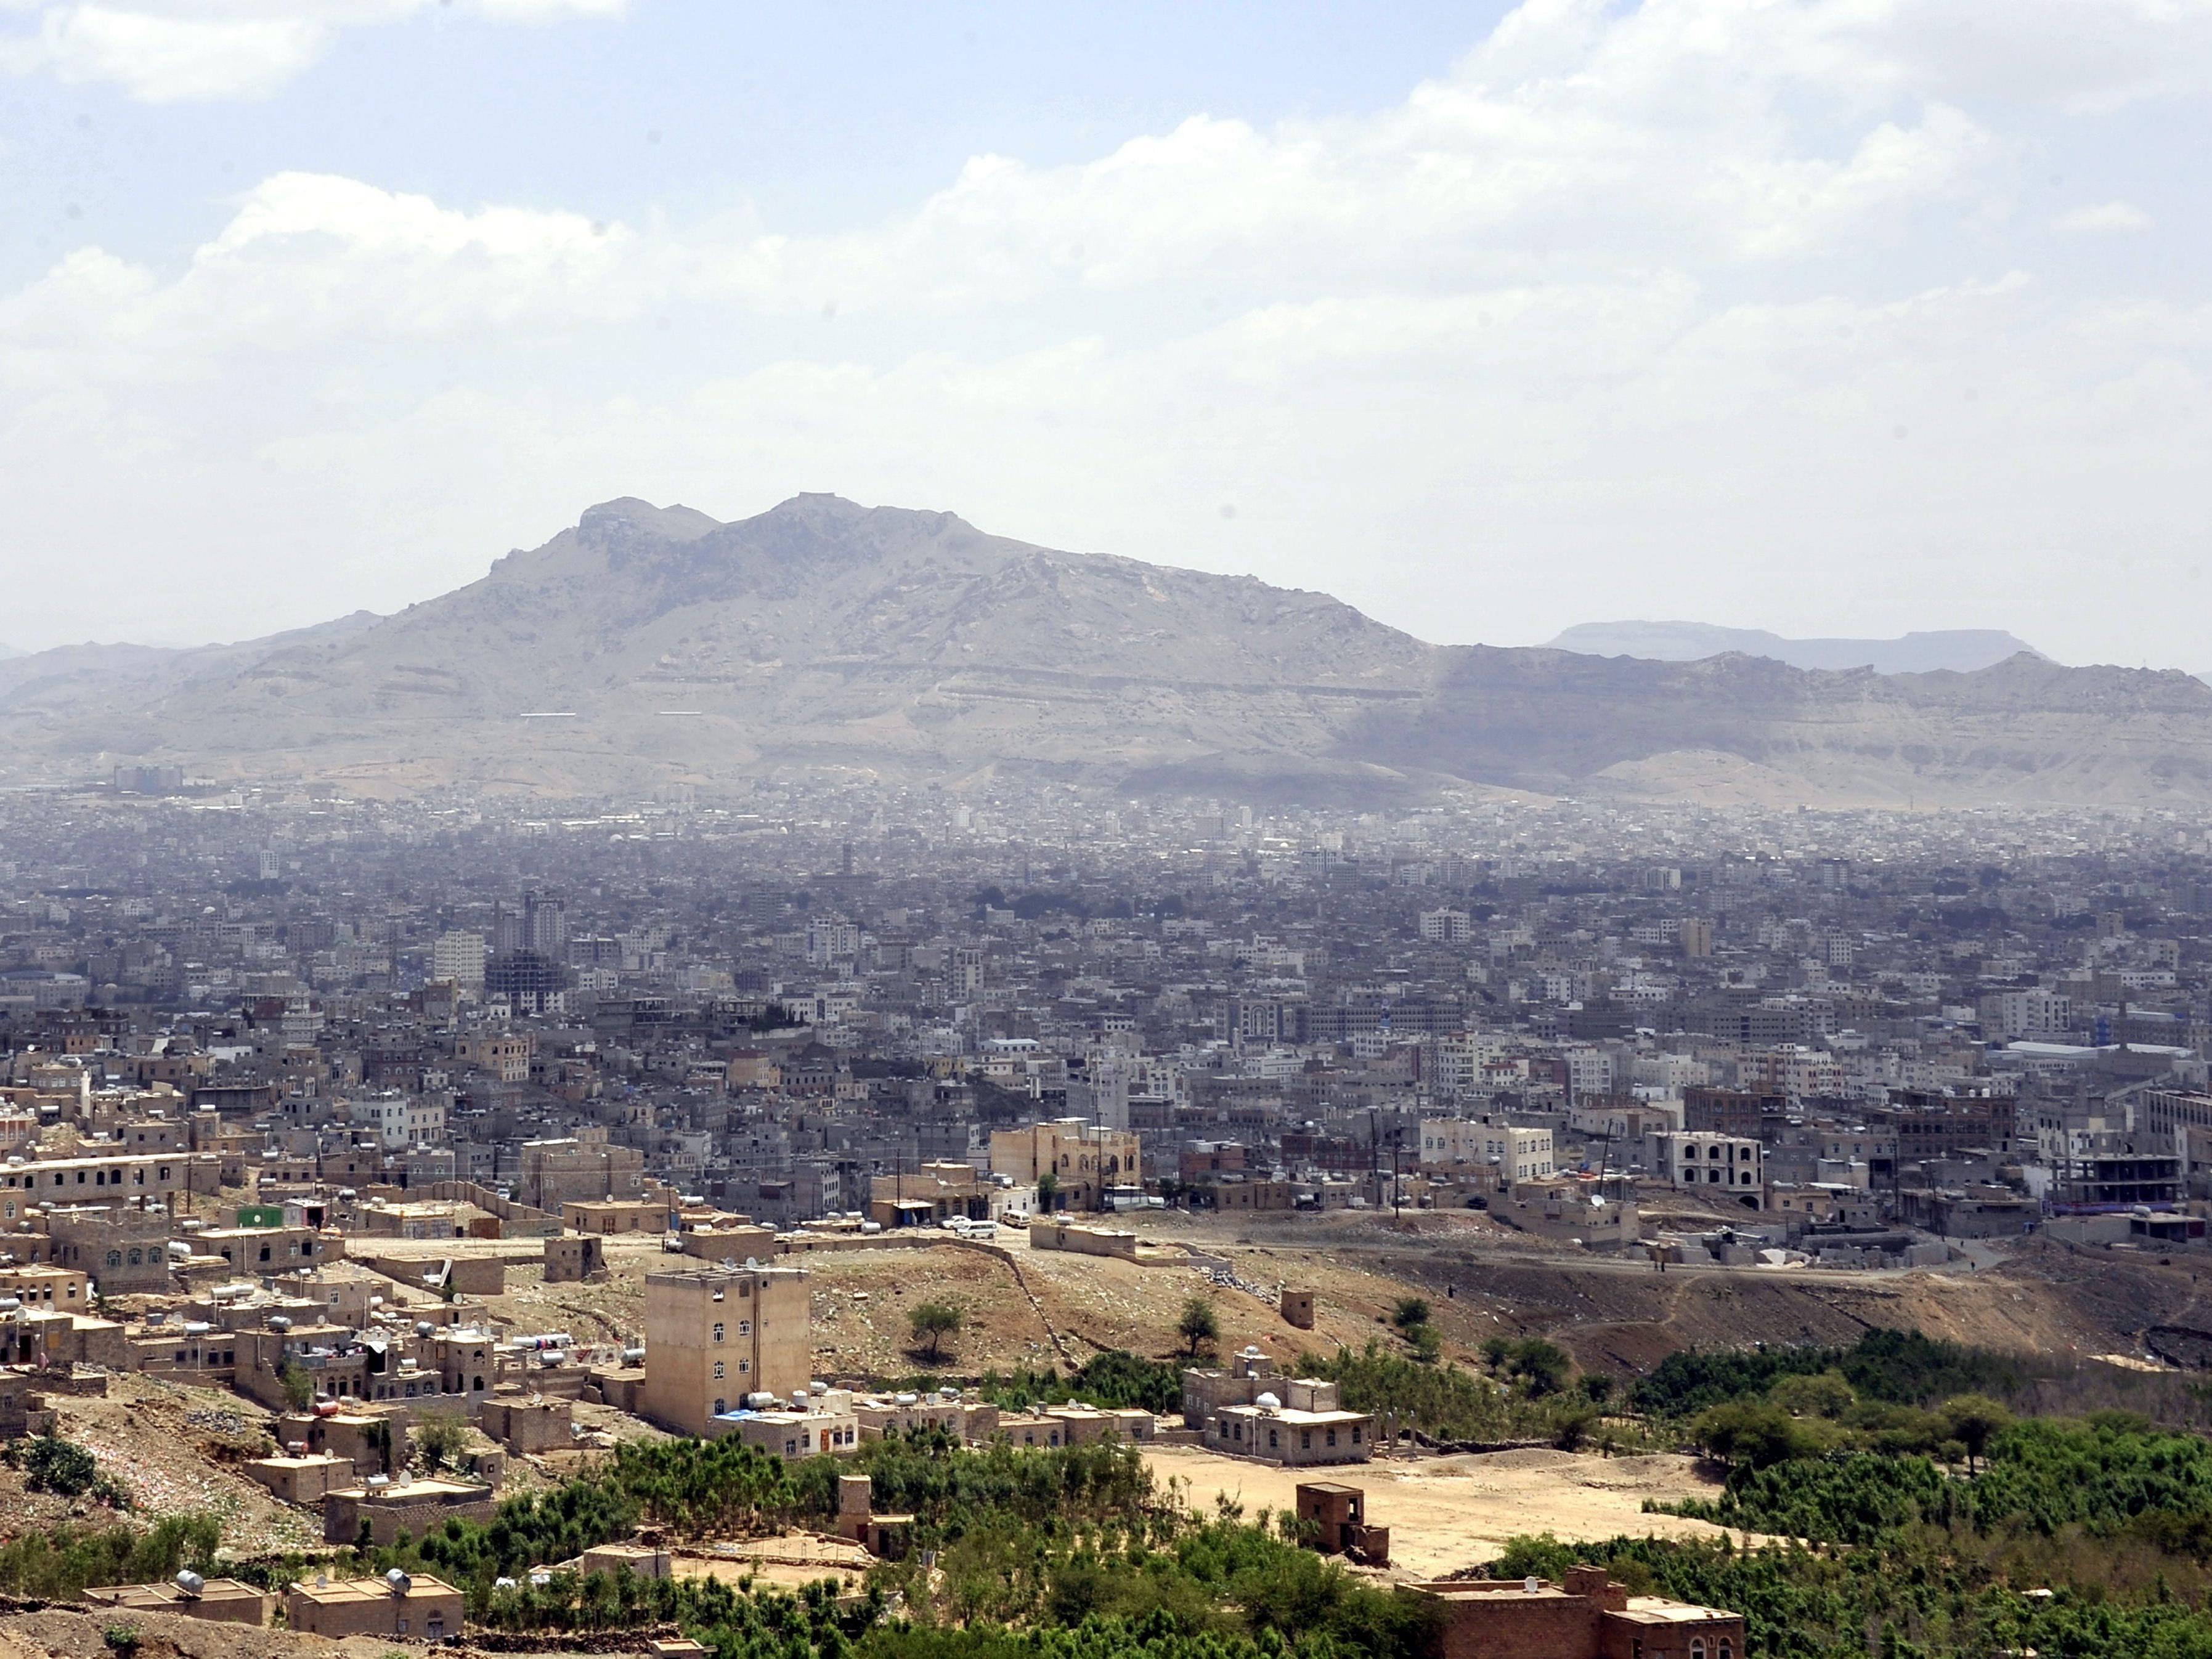 Die jemenitische Hauptstadt Sanaa wurde Ziel eines Selbstmordattentats